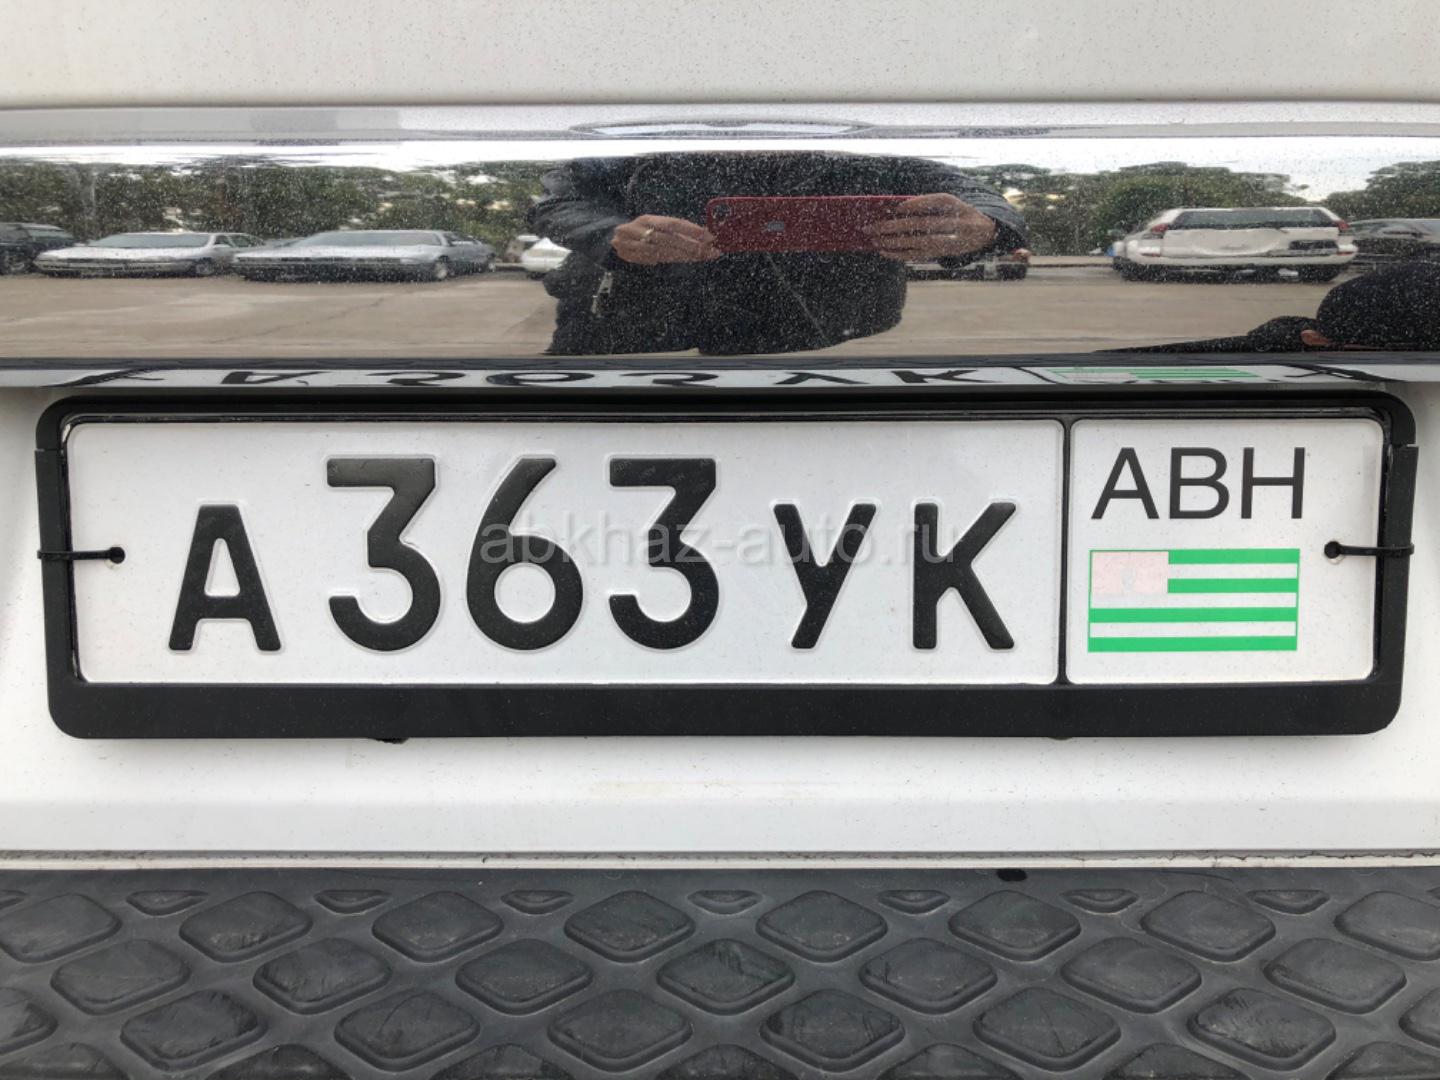 Абхазские номера можно ездить в россии. Номера Абхазии автомобильные. Гос номера Абхазии. Номерной знак Абхазии. Абхазия гос номера машины.